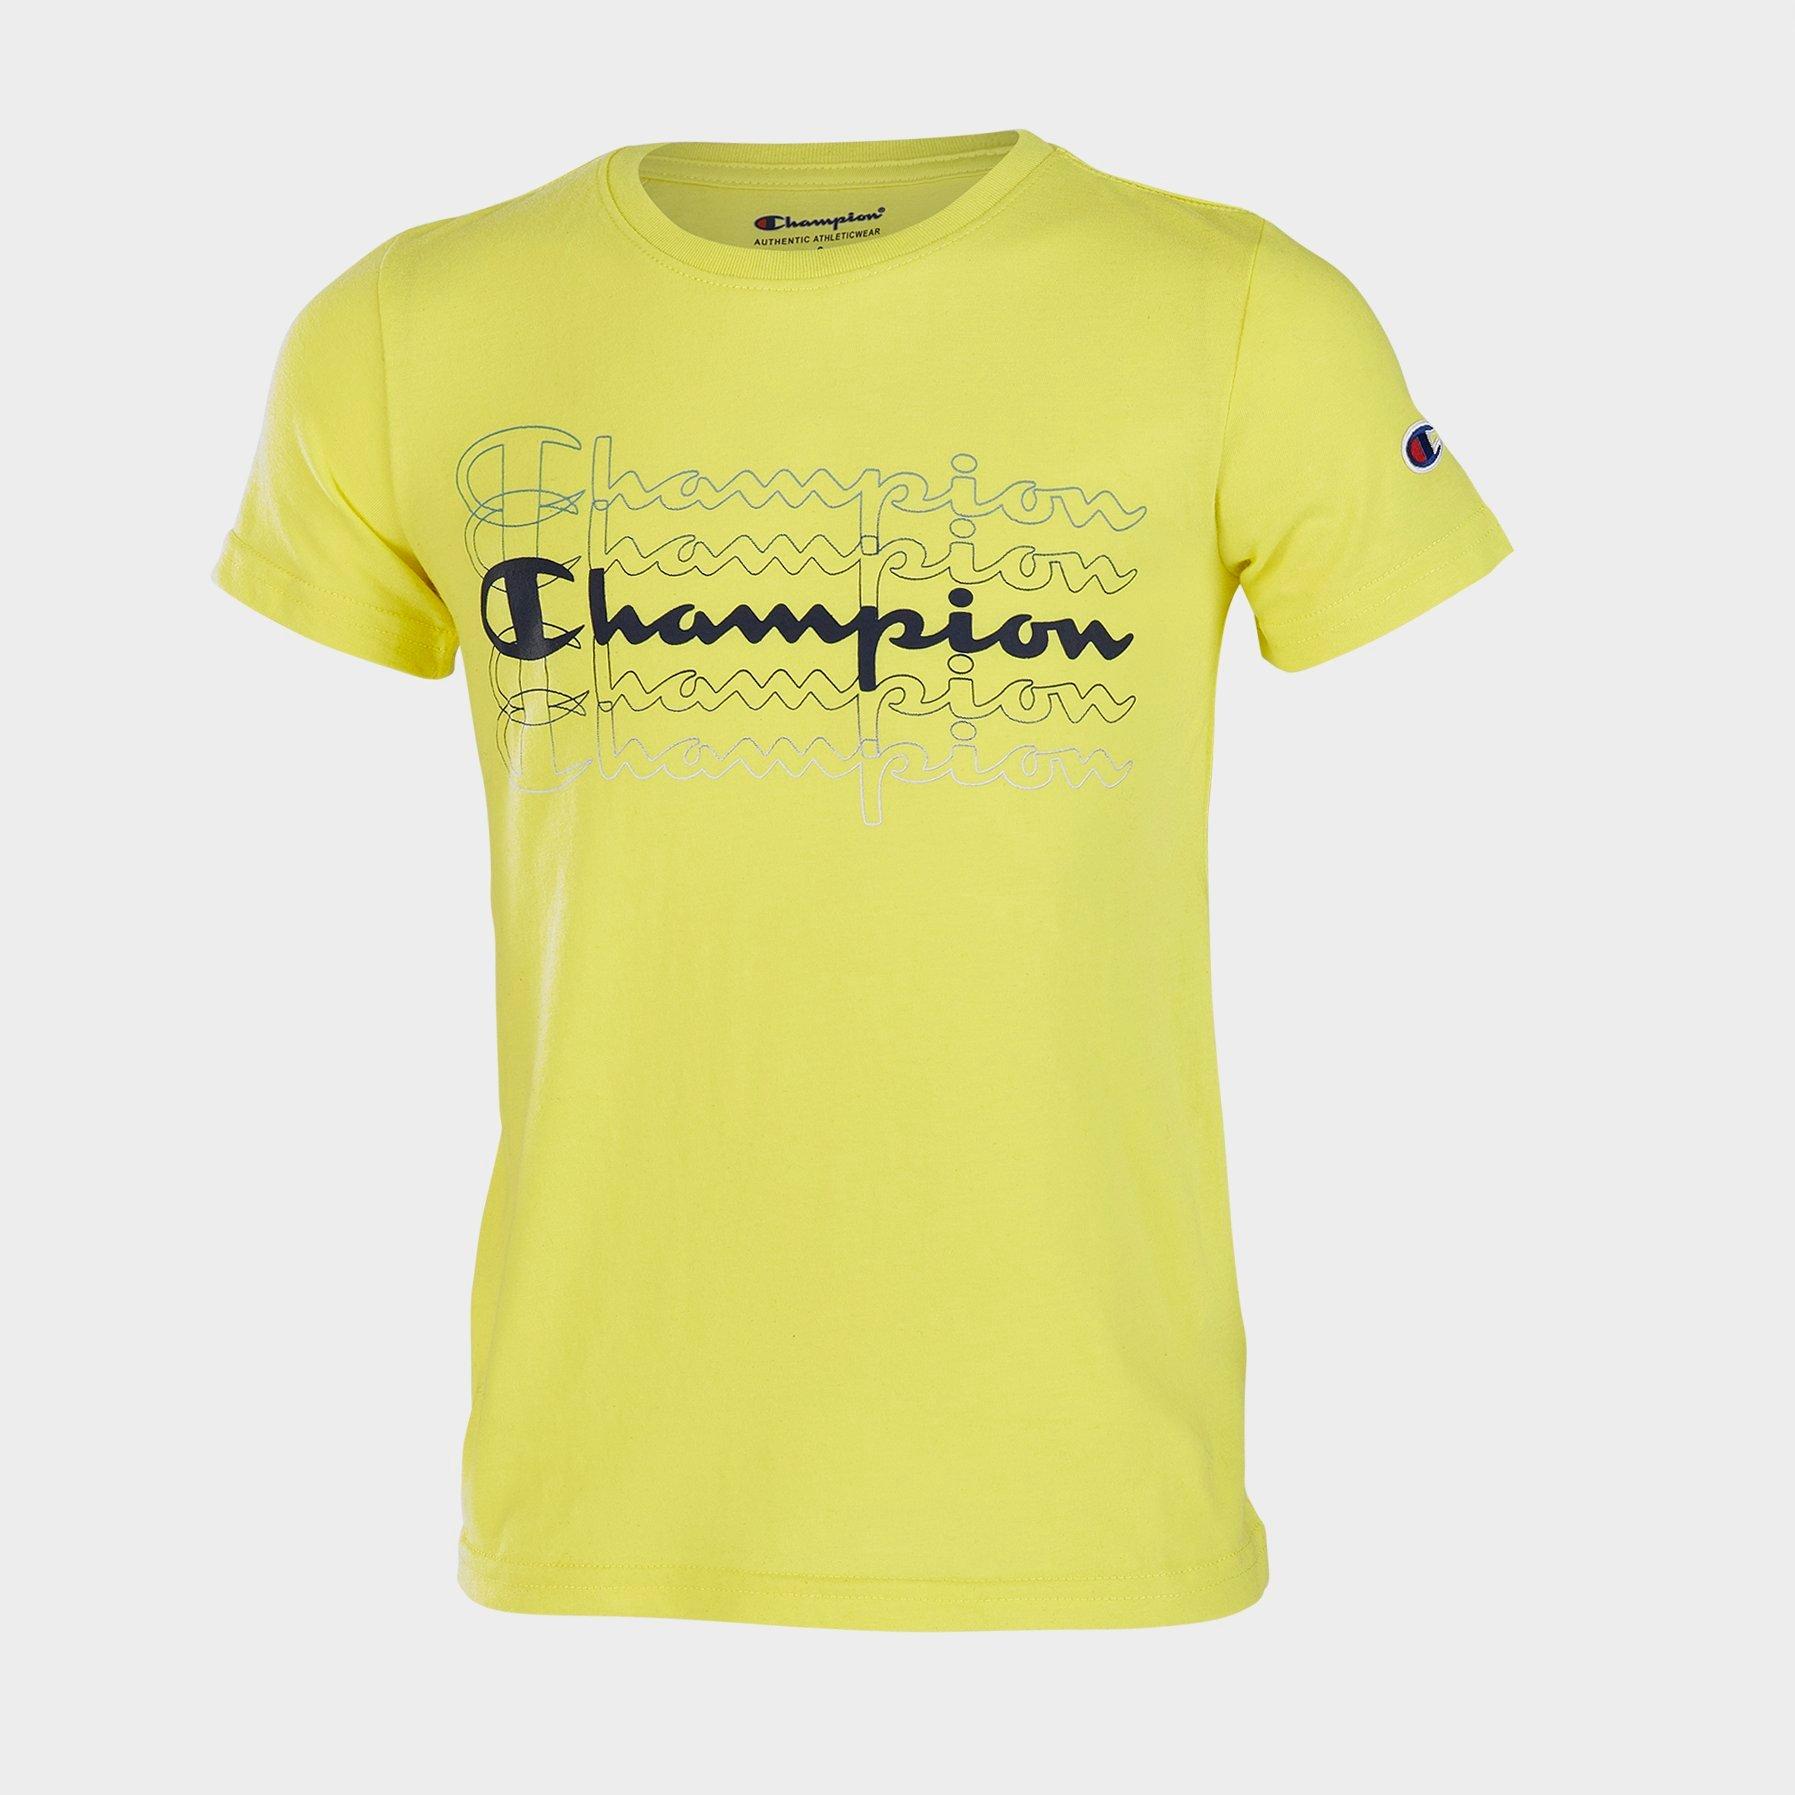 boys champion tshirt